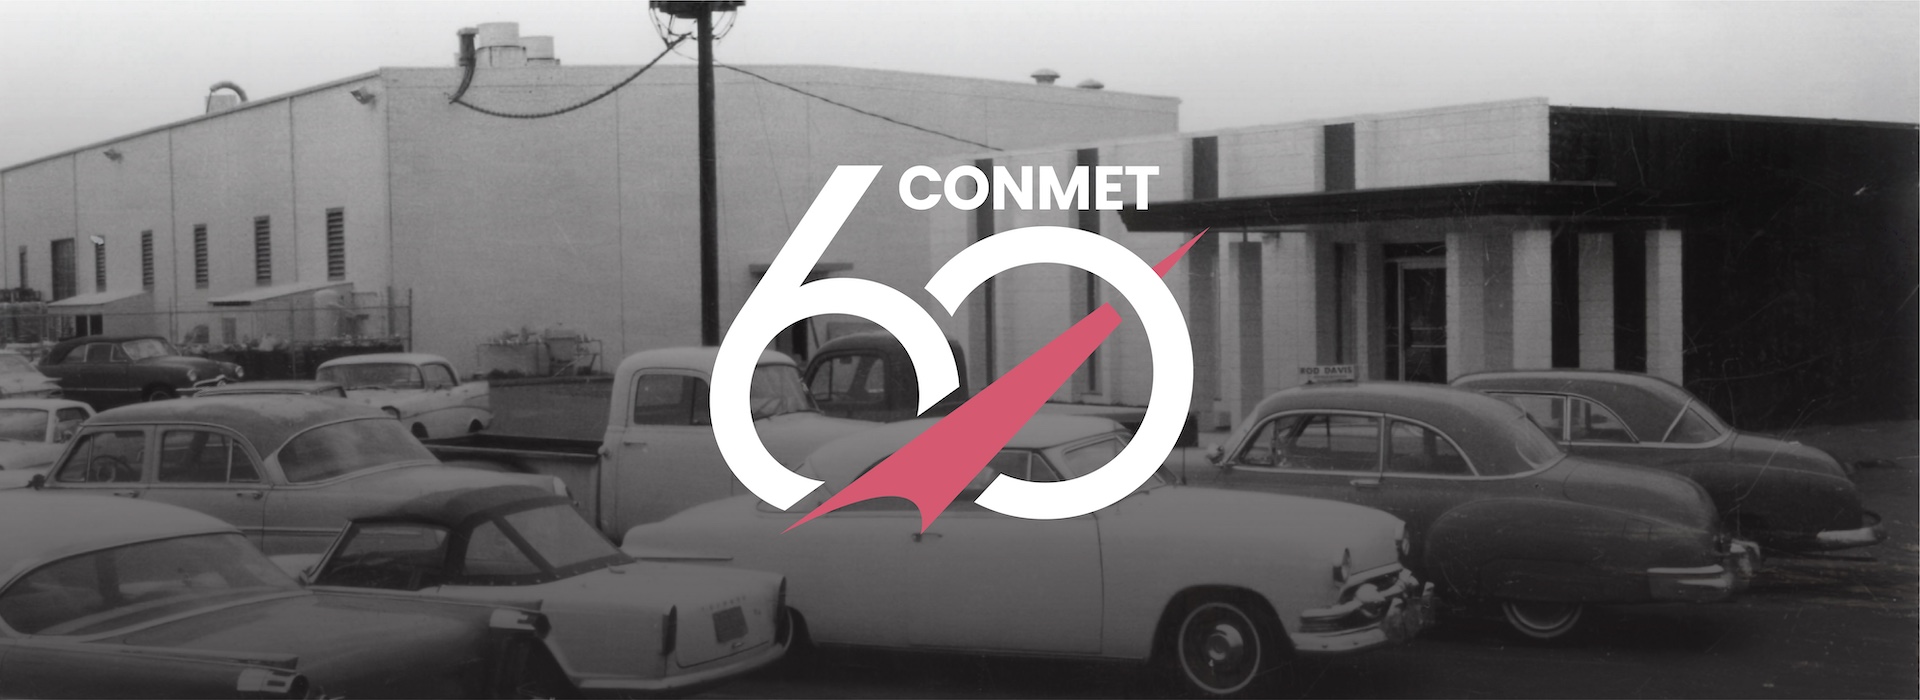 康迈庆祝60年的创新和行业领先地位